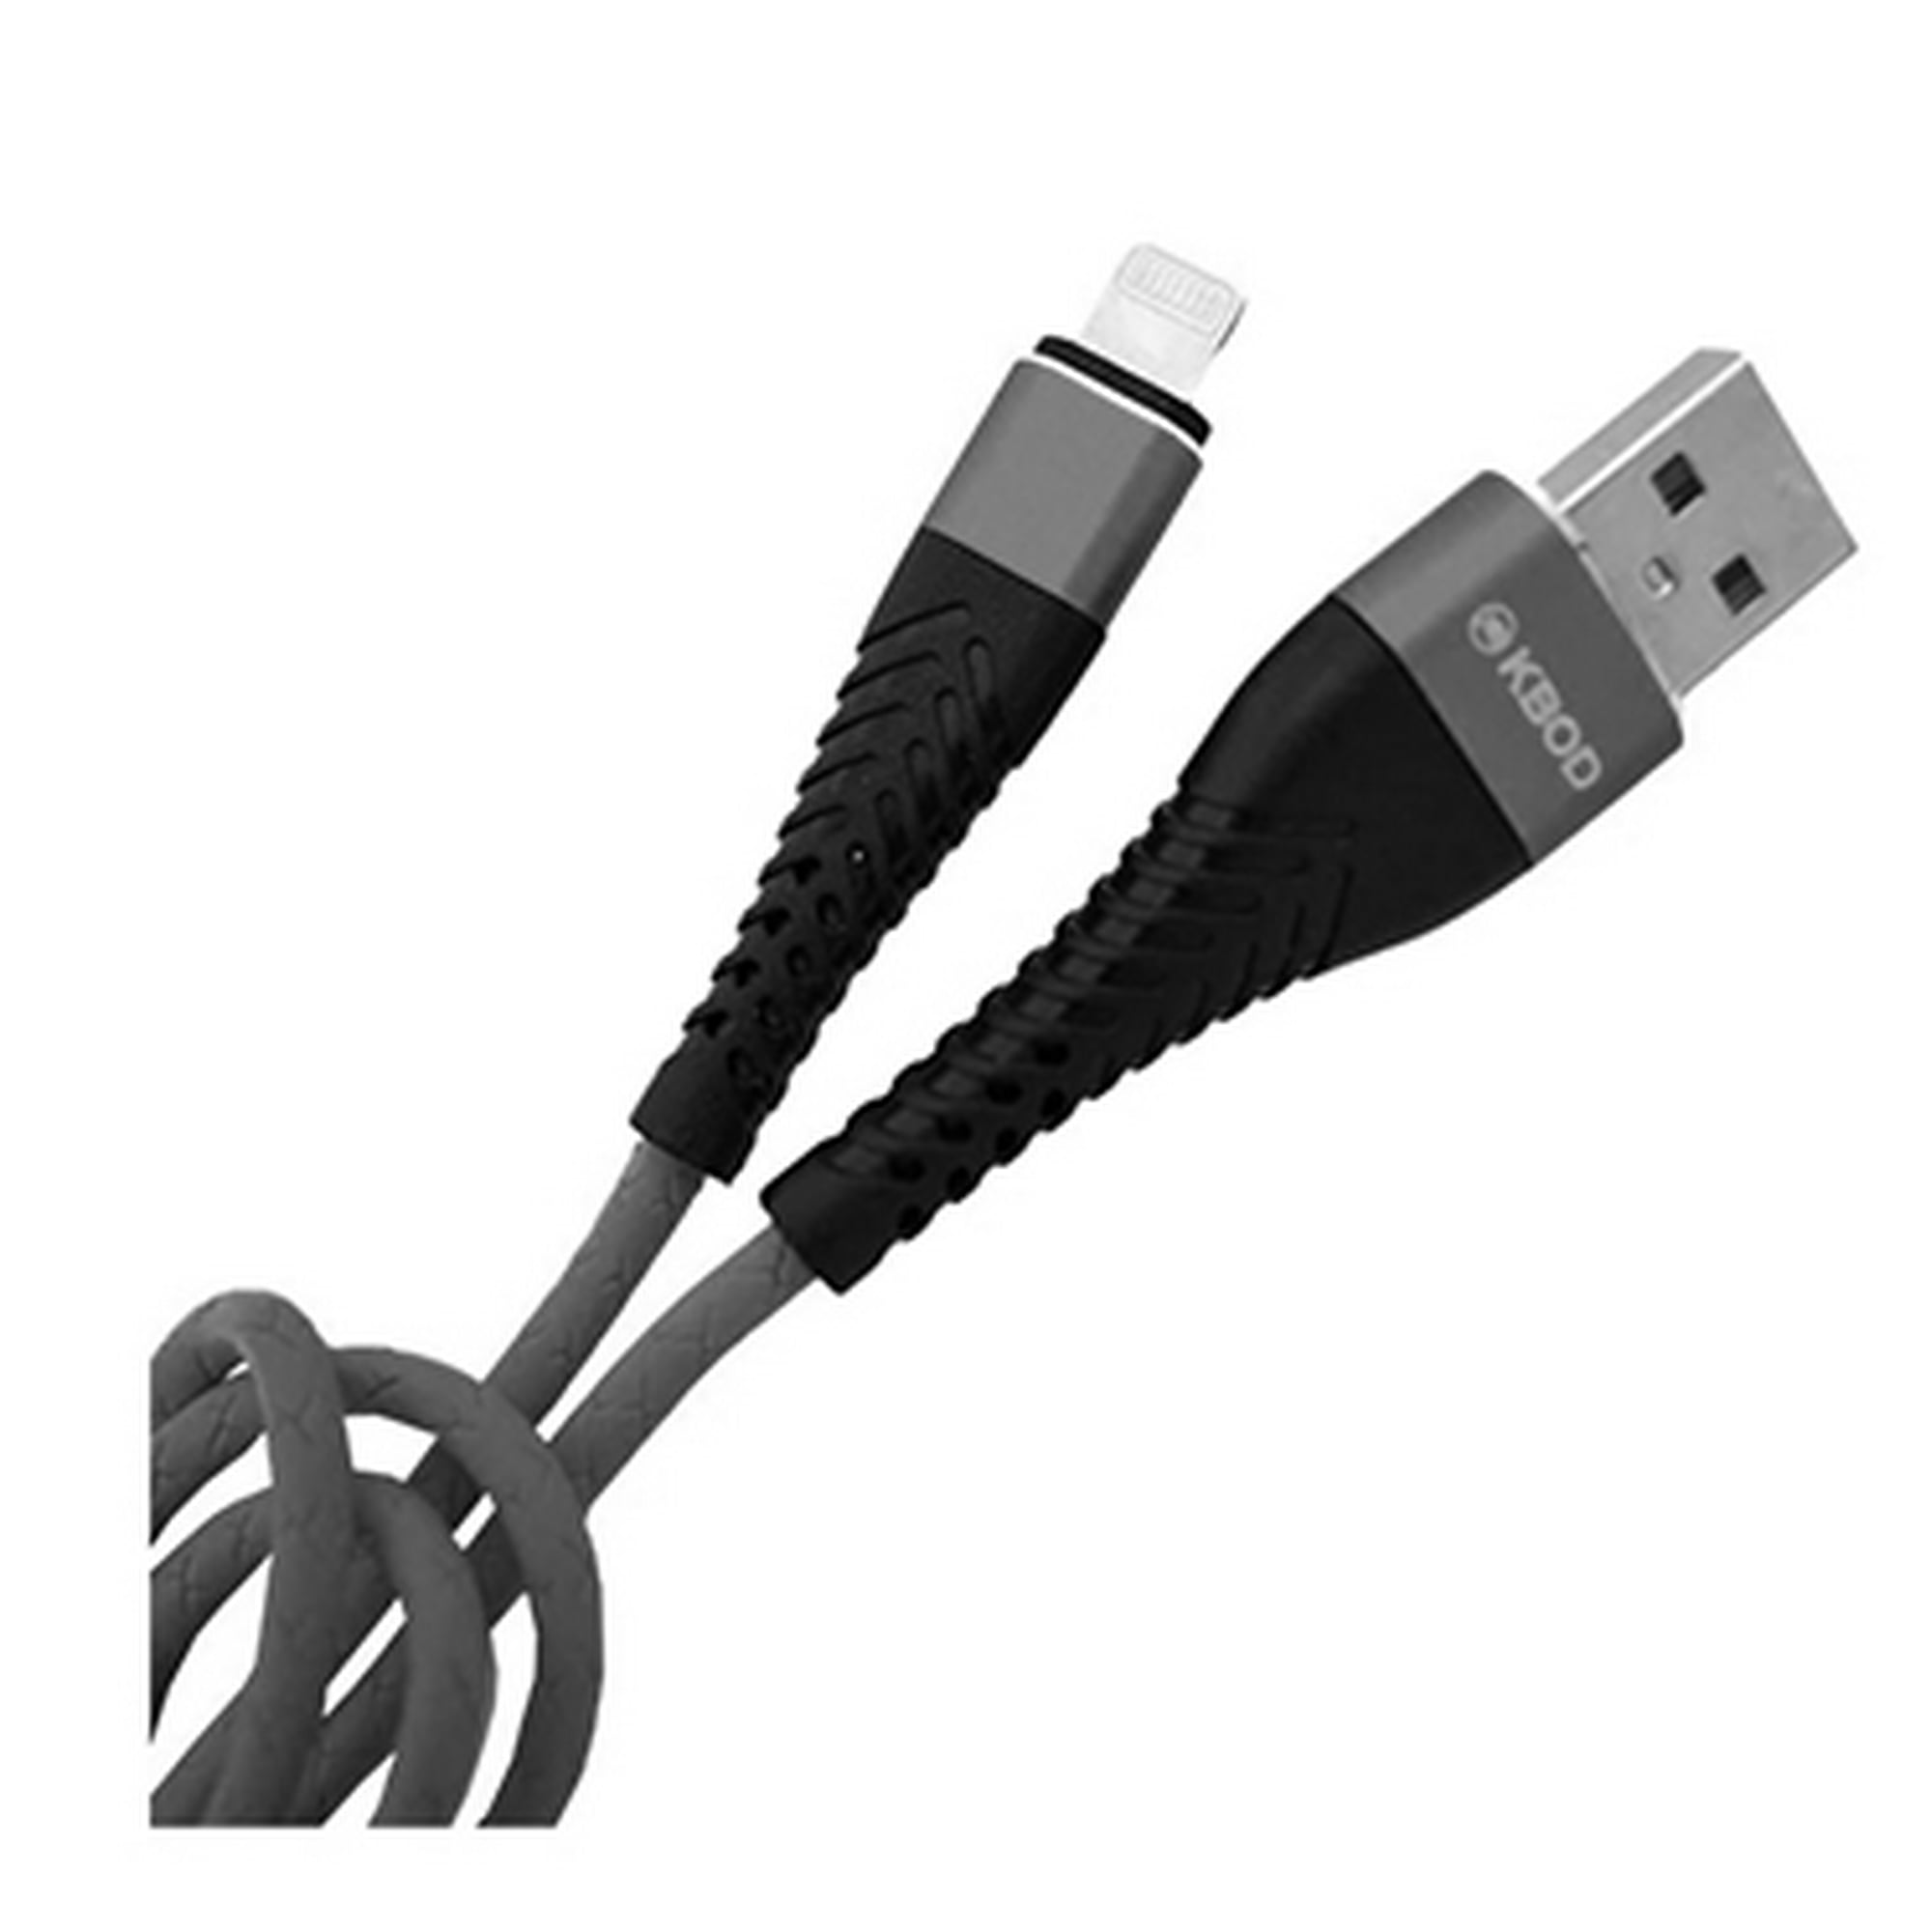 Cable Cargador Usb 4 En 1 Micro-usb-c Carga Rapida Reforzado Color Negro